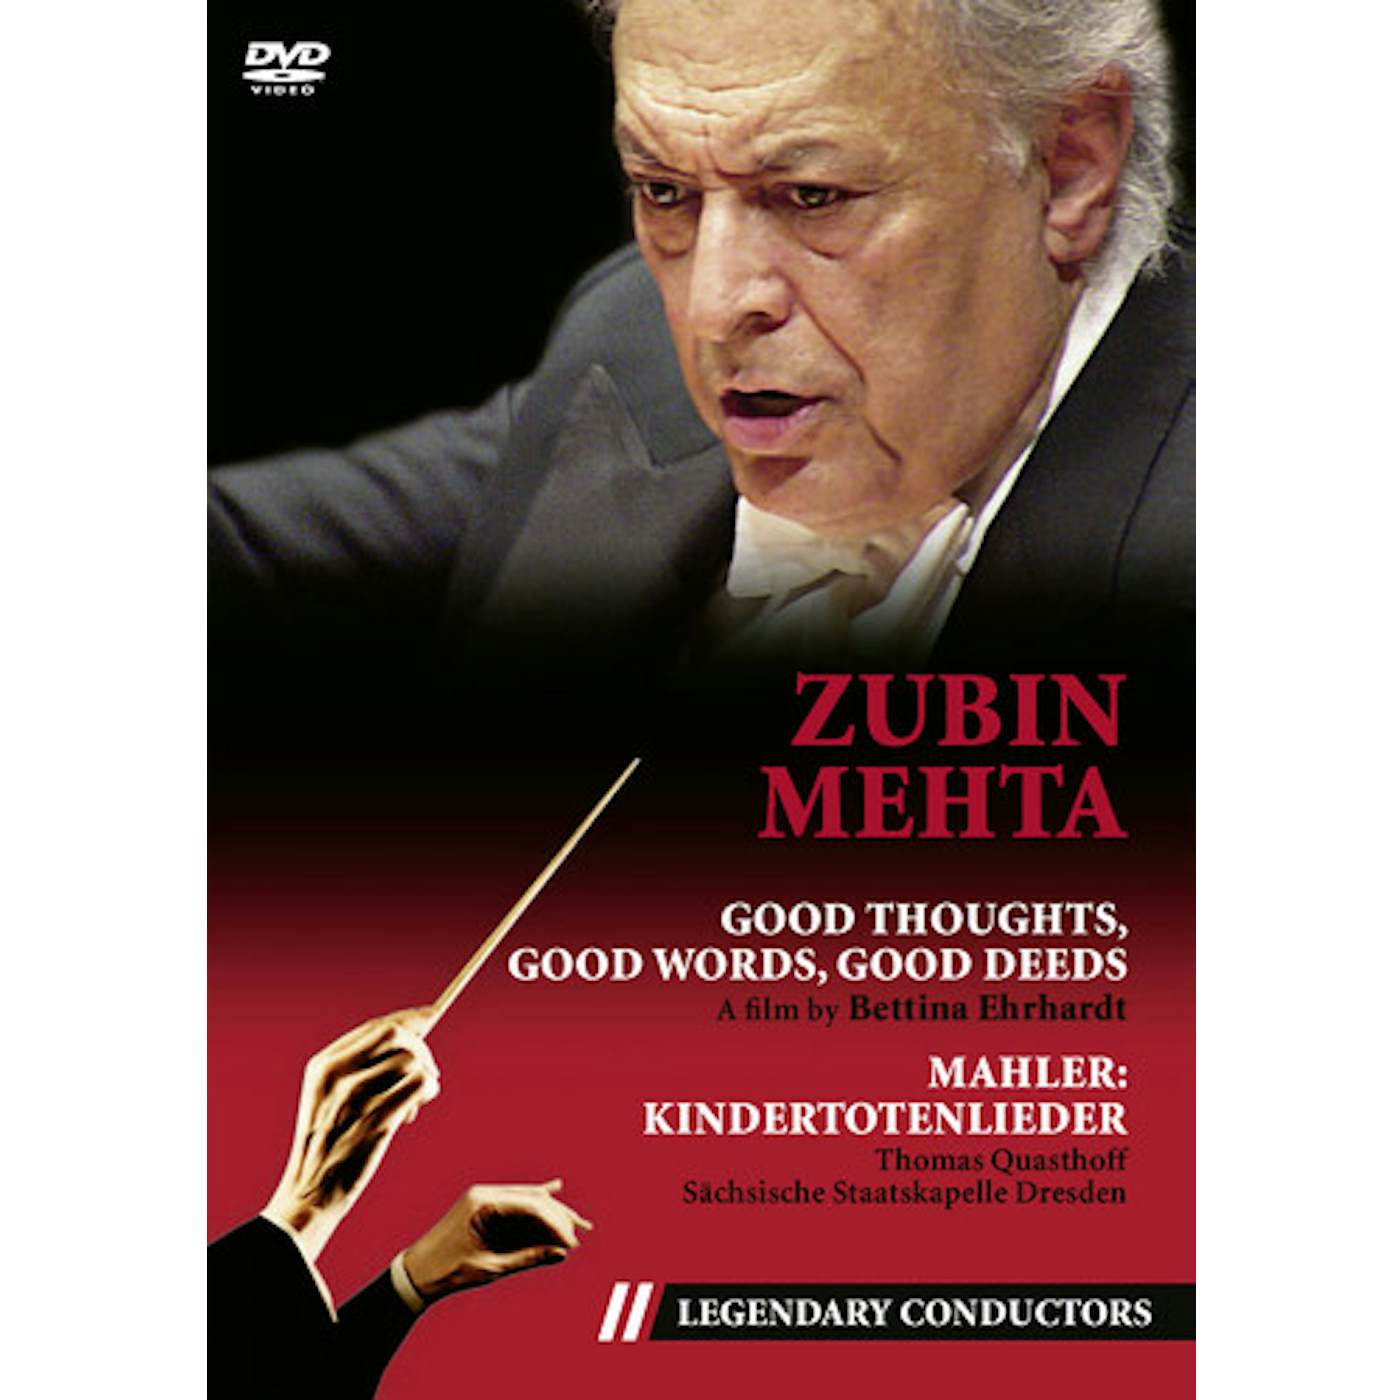 Zubin Mehta GOOD THOUGHTS, GOOD WORDS, GOOD DEEDS DVD